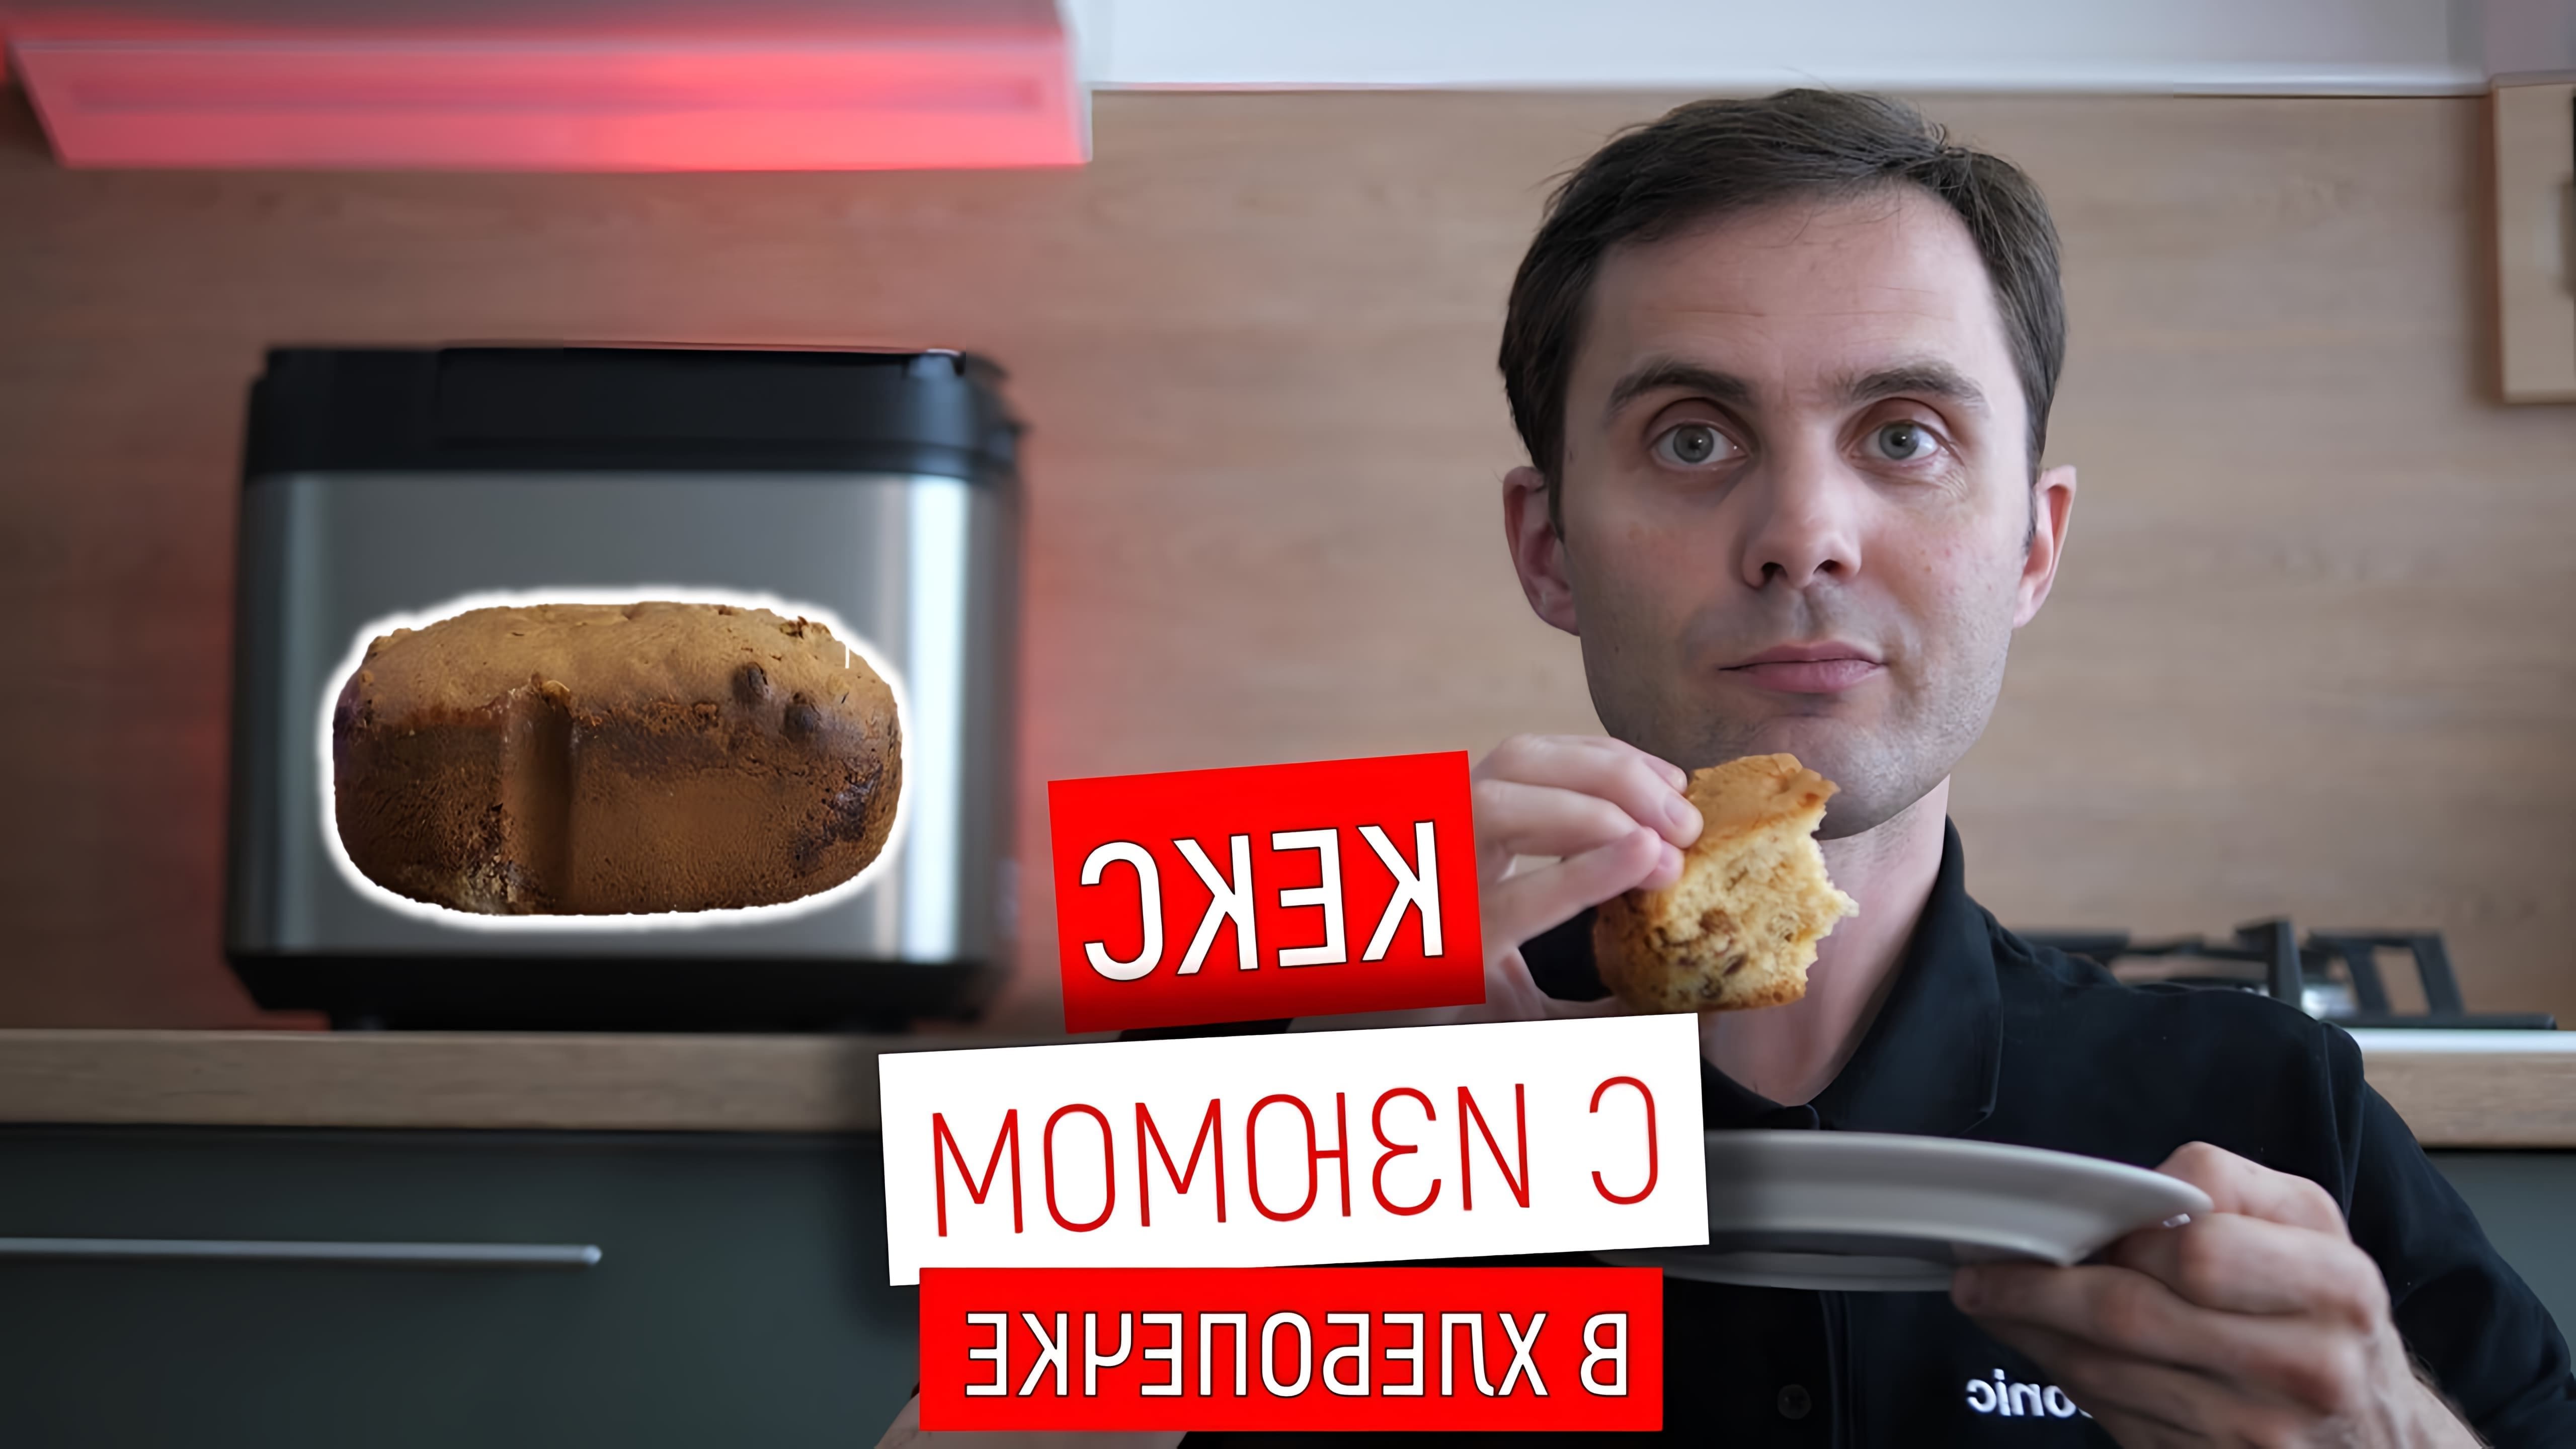 В данном видео Юрий Железняков показывает, как приготовить столичный кекс с изюмом в хлебопечке Panasonic